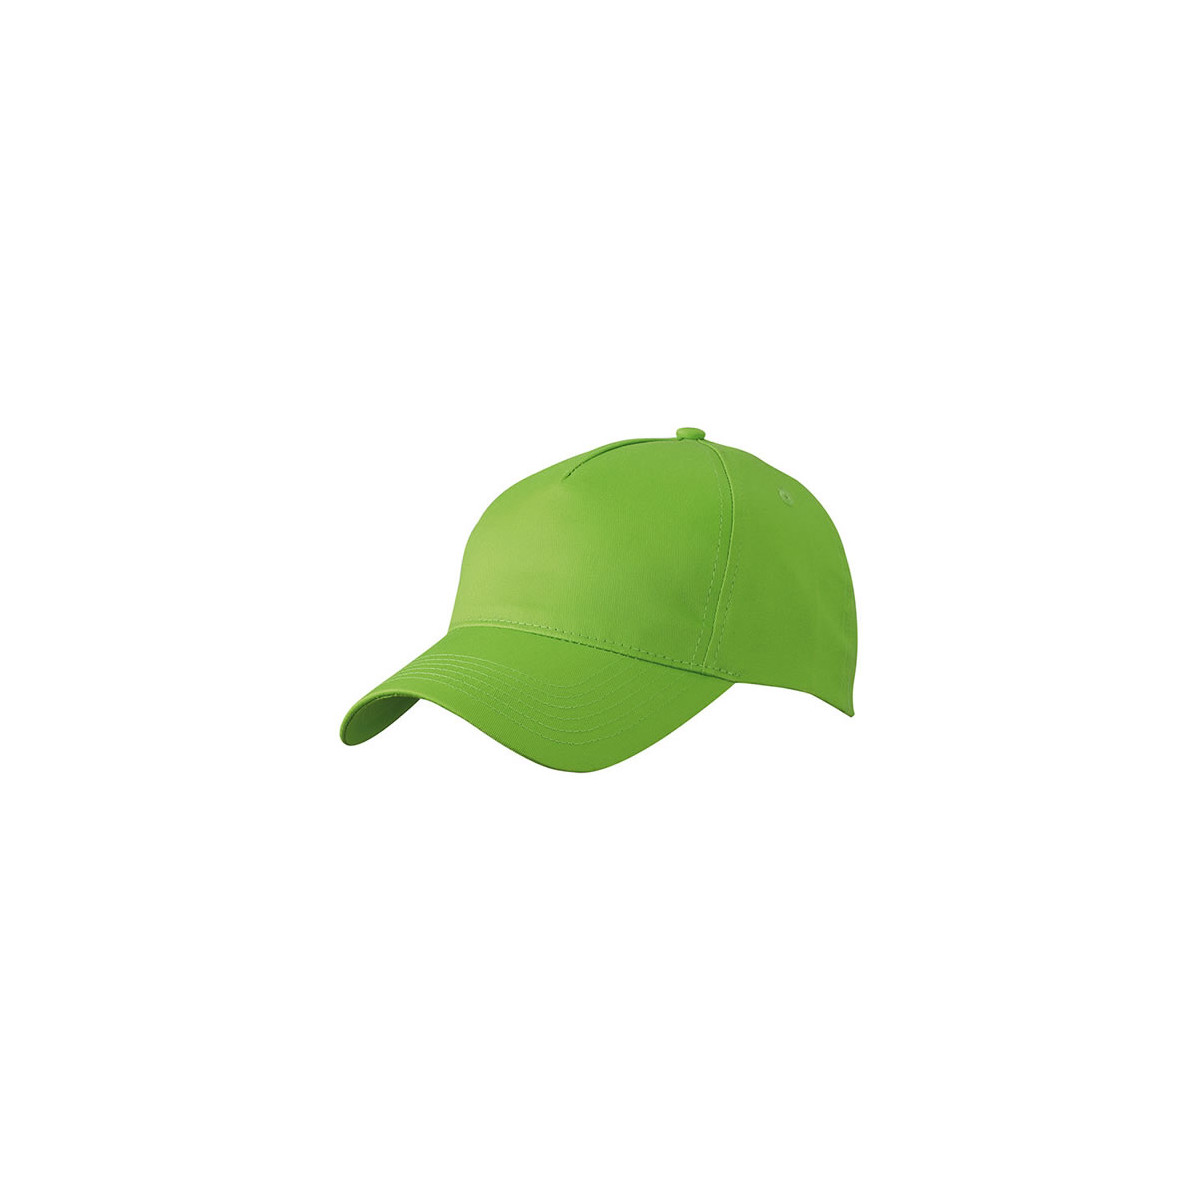 czapki-bhp-z-daszkiem - Czapka z daszkiem zielona jabłko pięciopanelowa